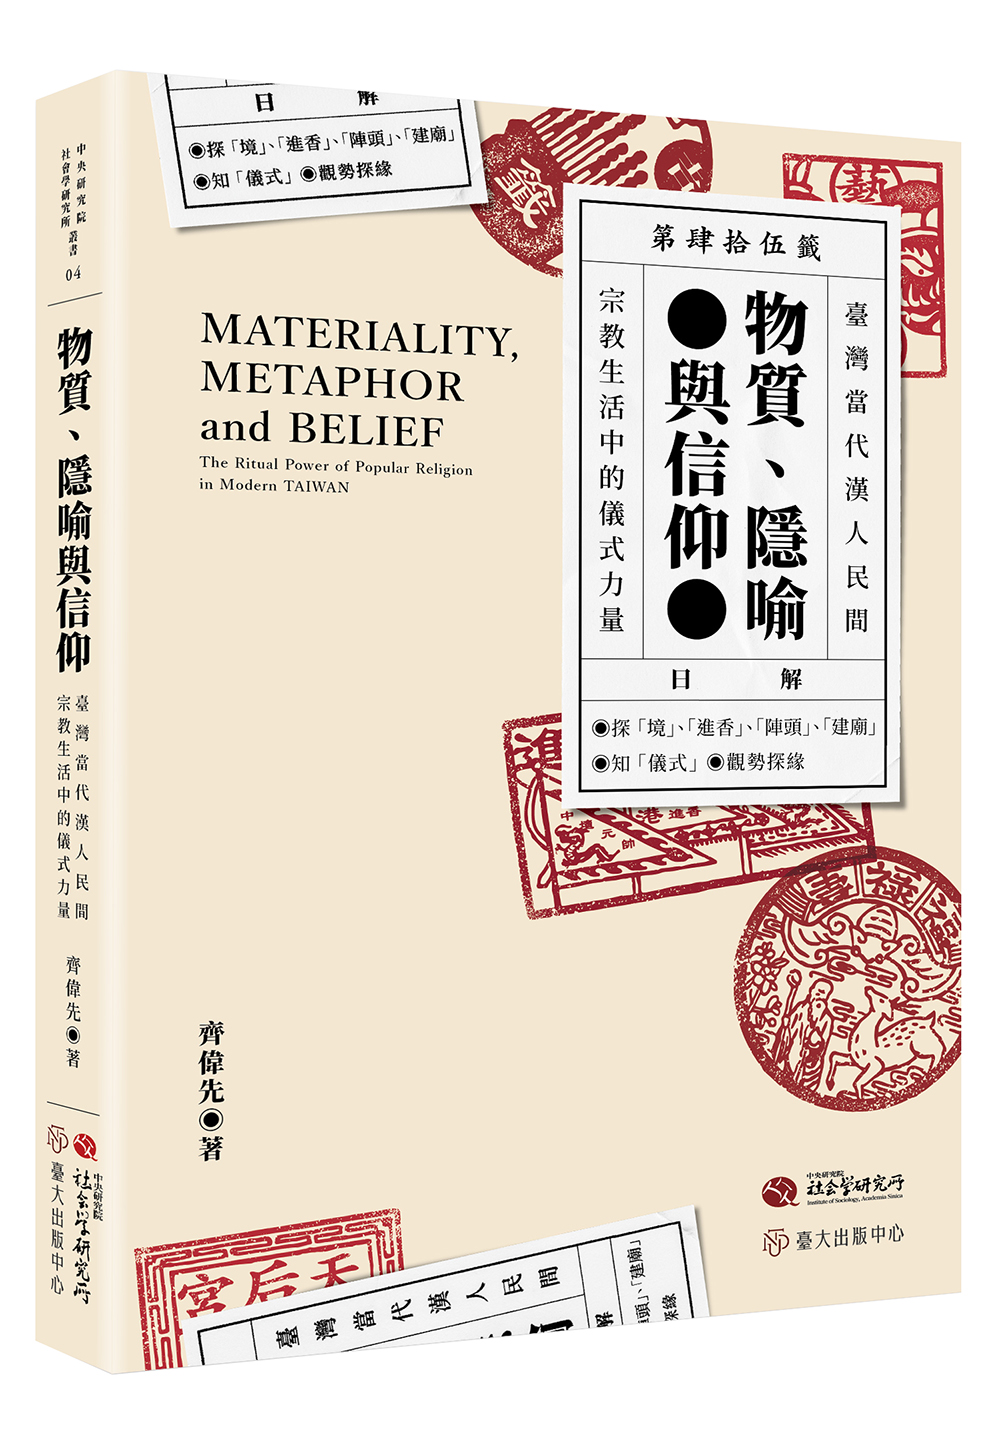 物質、隱喻與信仰──臺灣當代漢人民間宗教生活中的儀式力量